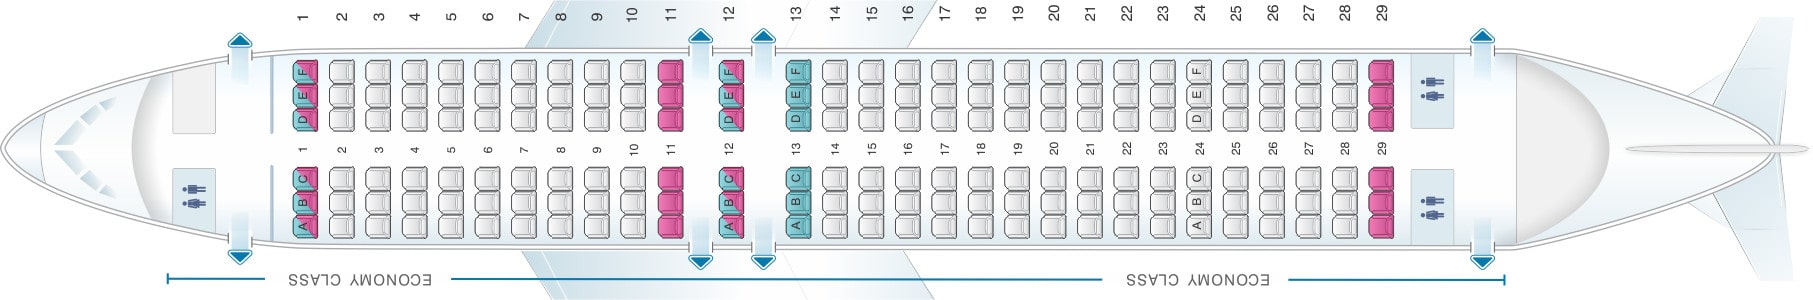 Aer Lingus A320 Seating Plan